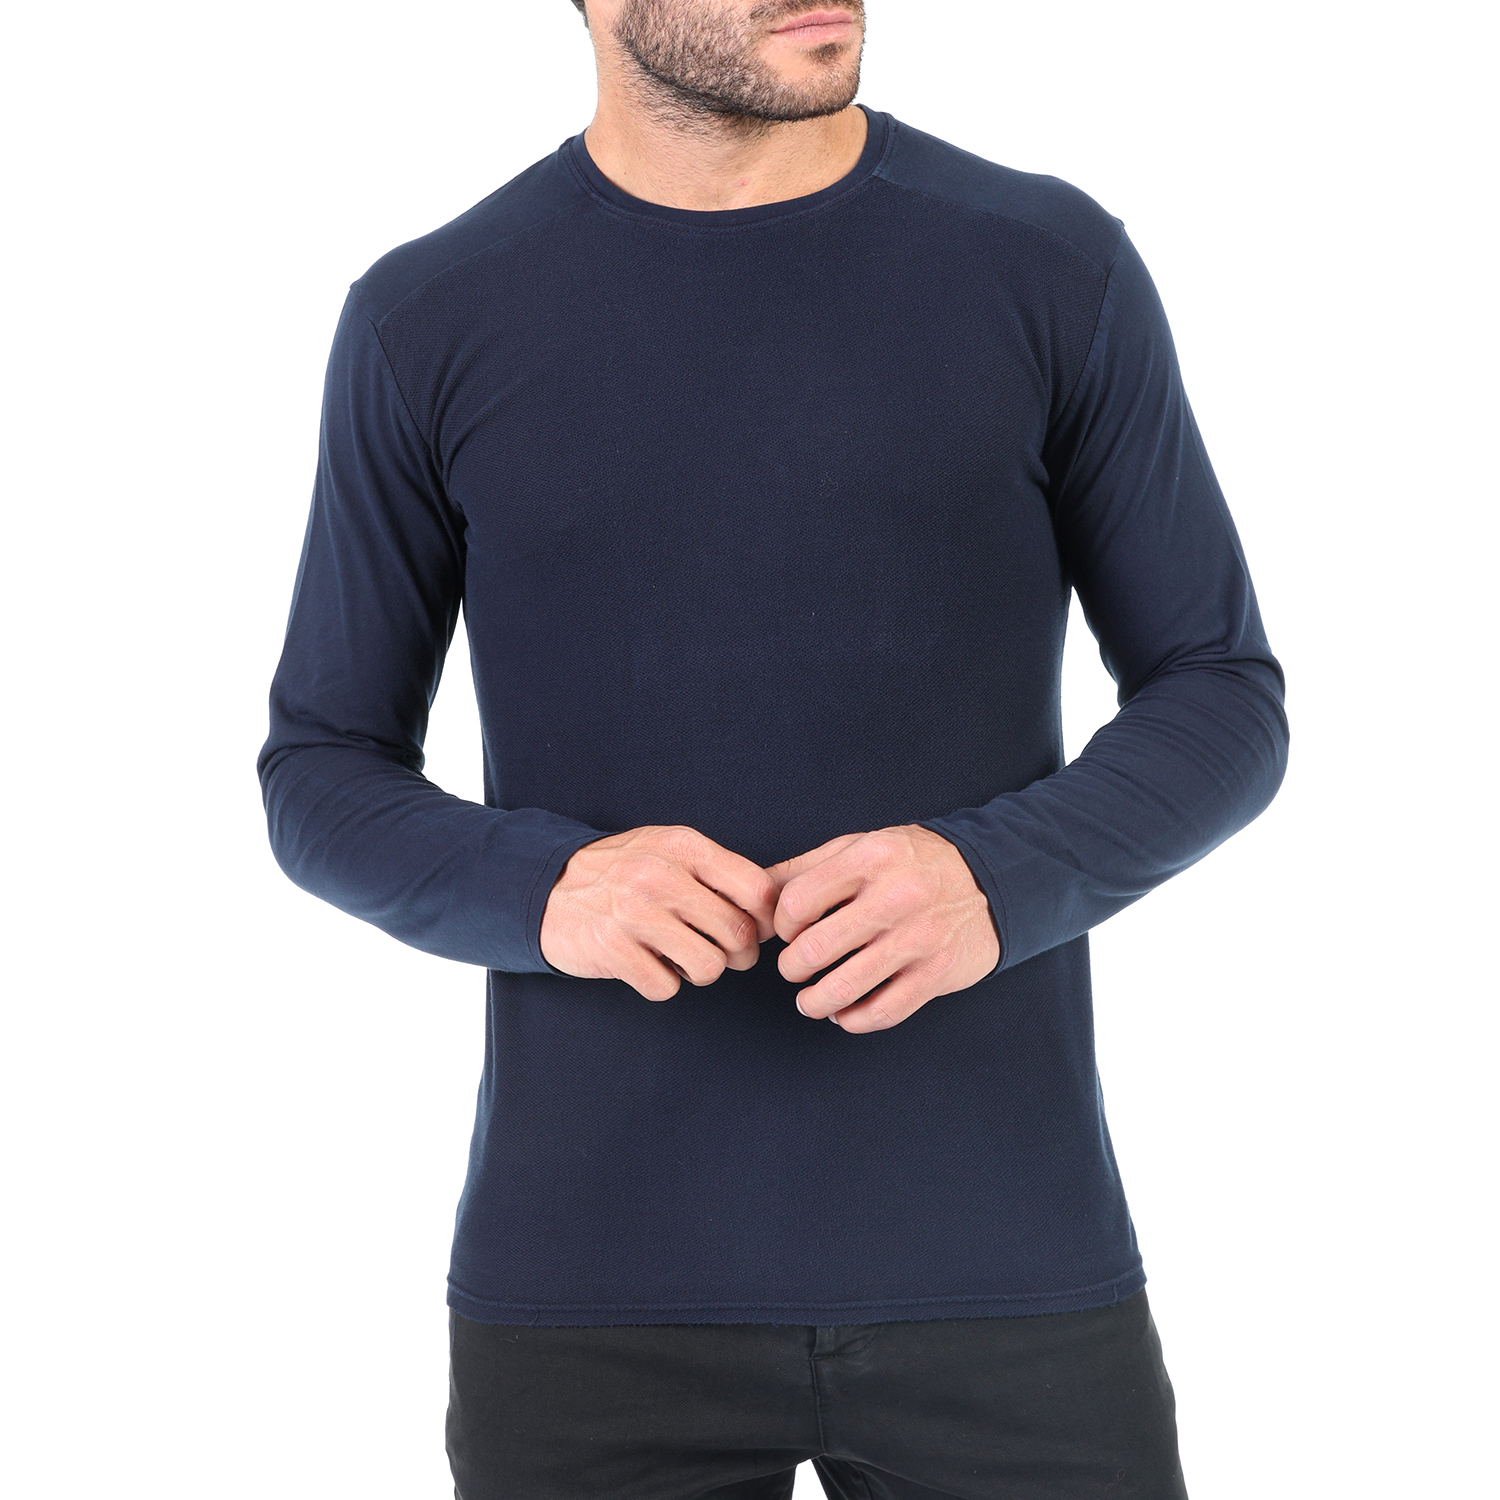 Ανδρικά/Ρούχα/Μπλούζες/Μακρυμάνικες DIRTY LAUNDRY - Ανδρική μακρυμάνικη μπλούζα DIRTY LAUNDRY μπλε